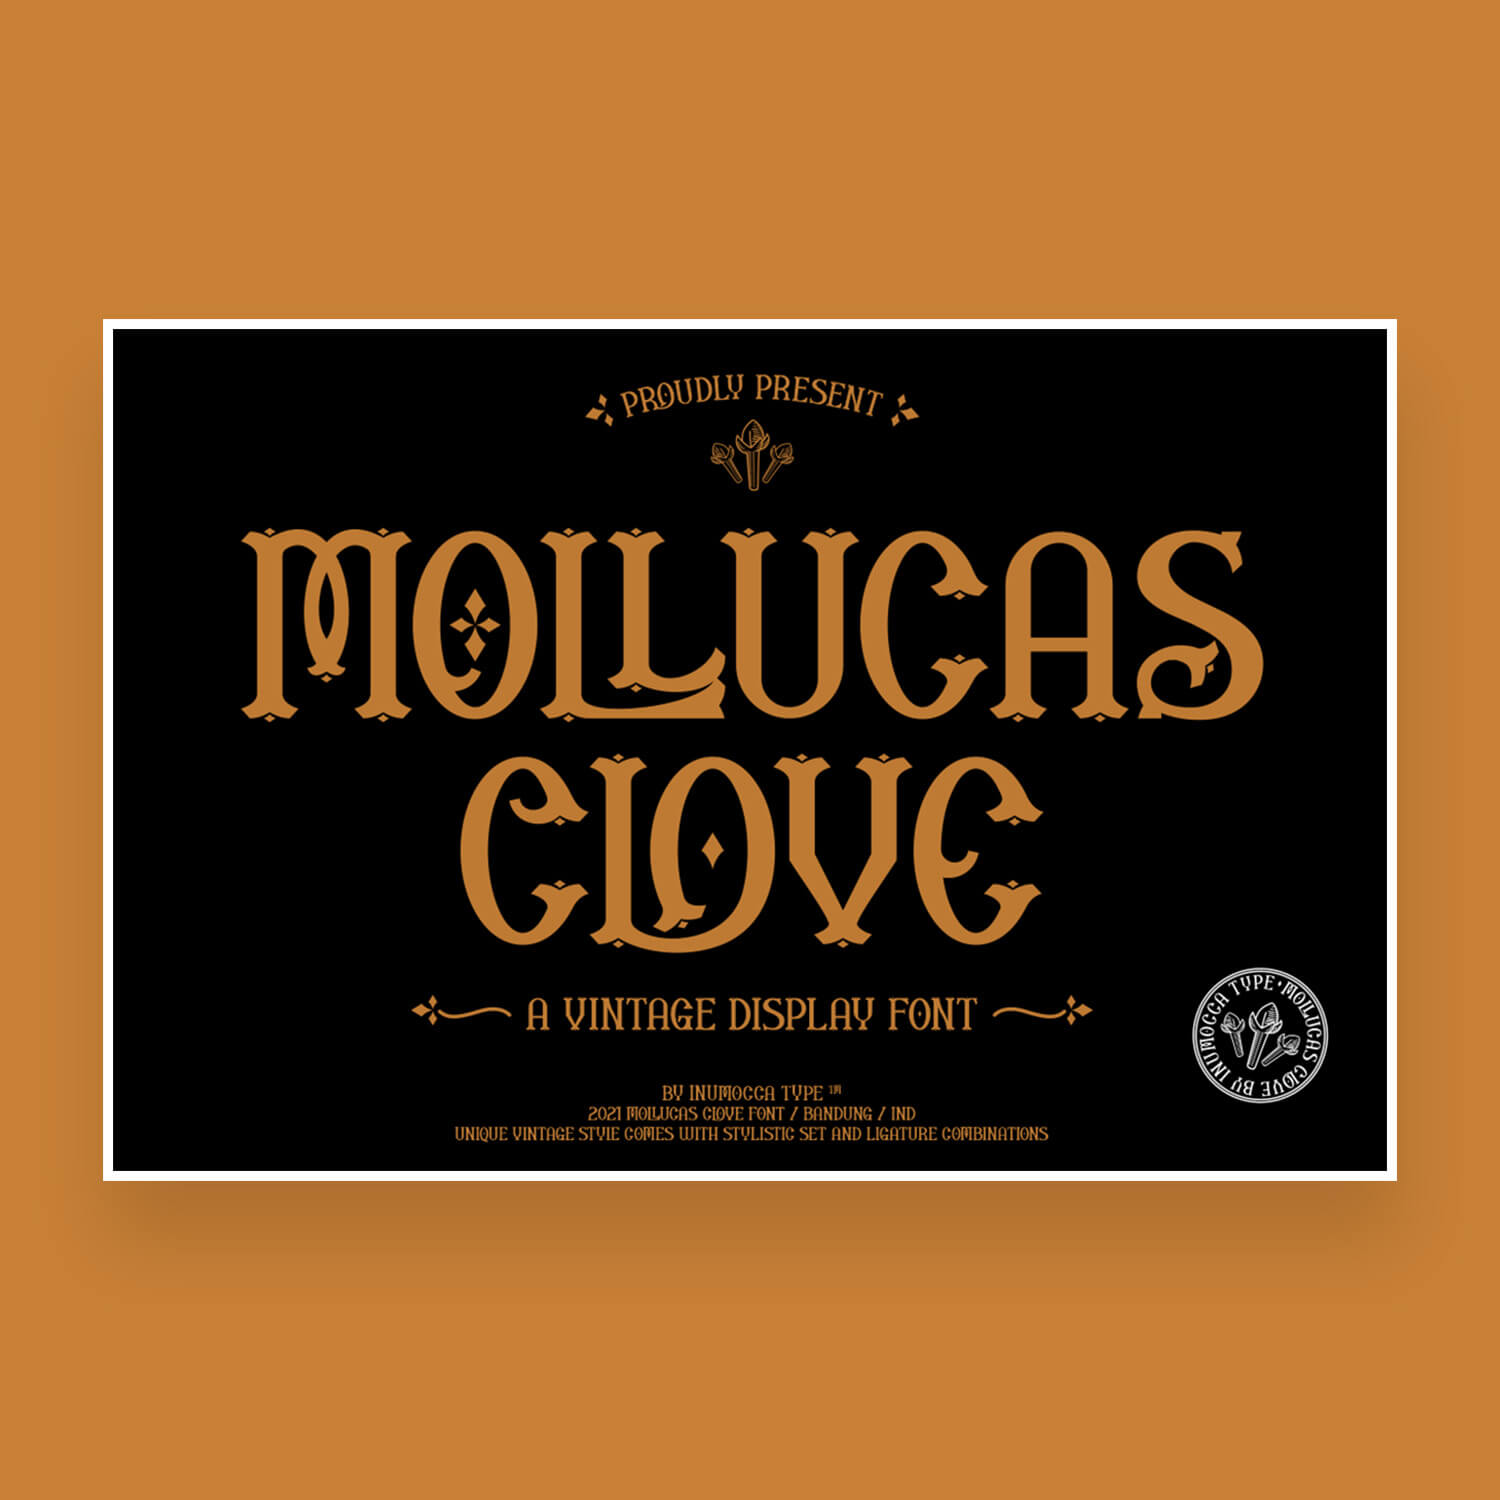 mollucas clove unique vintage display font cover image.